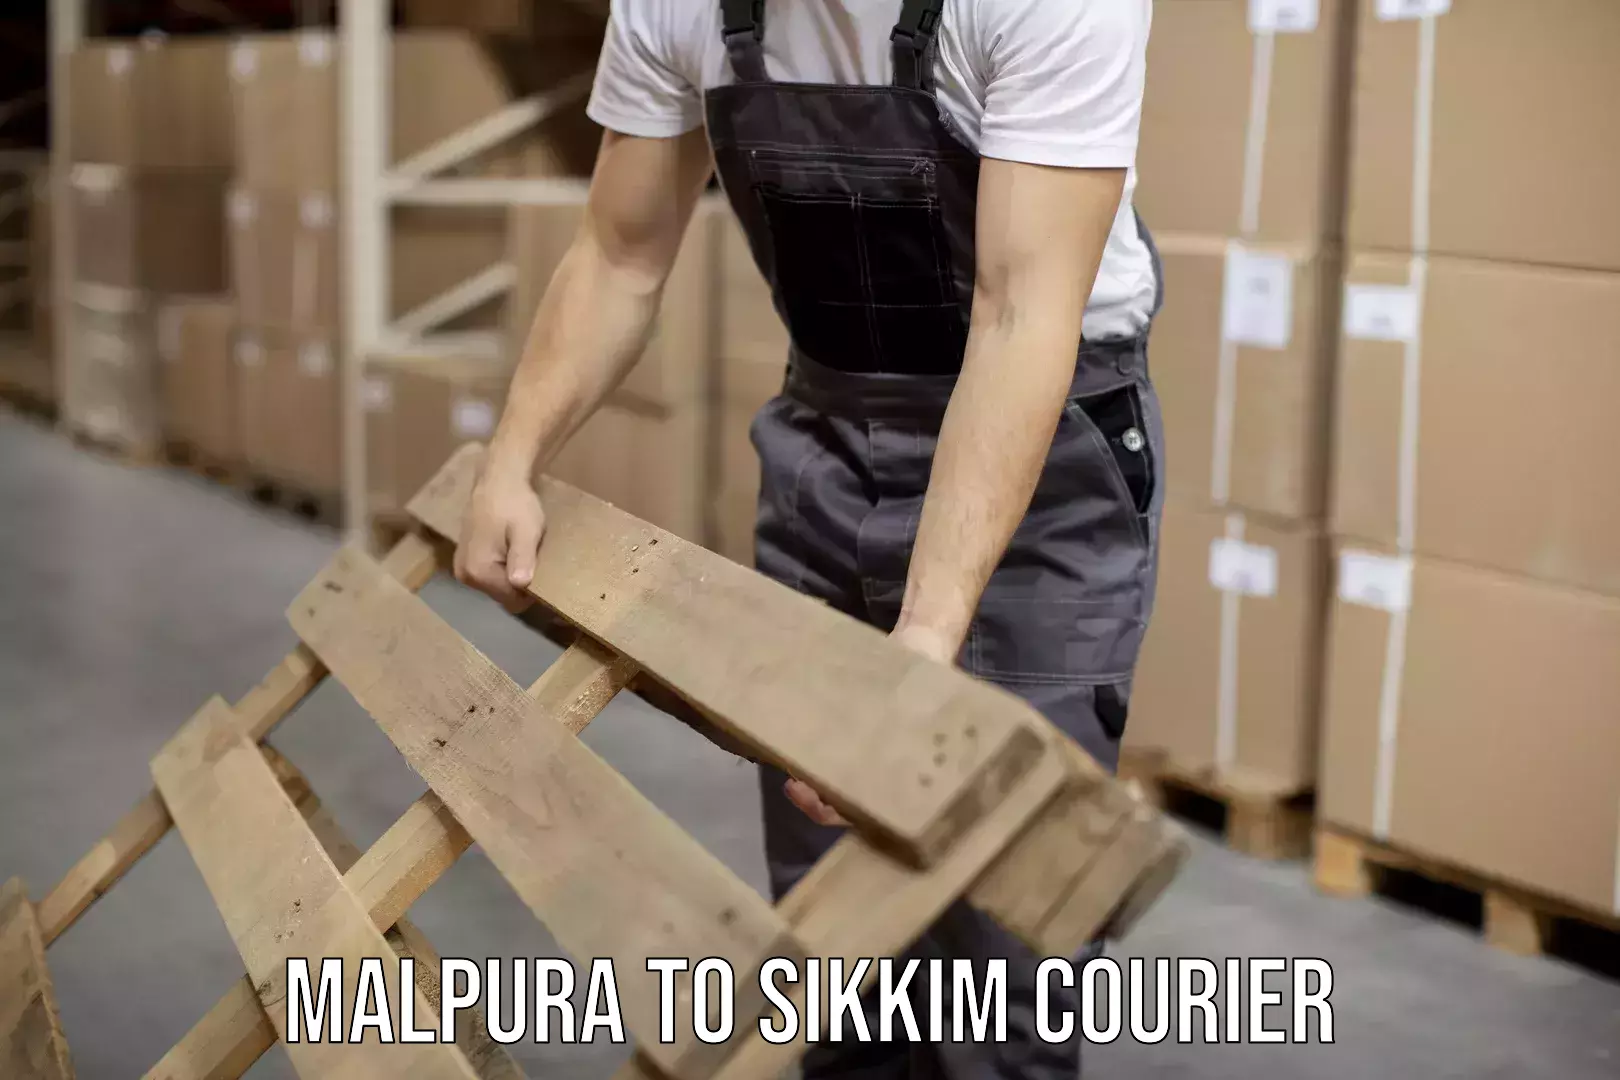 Custom courier packaging Malpura to Sikkim